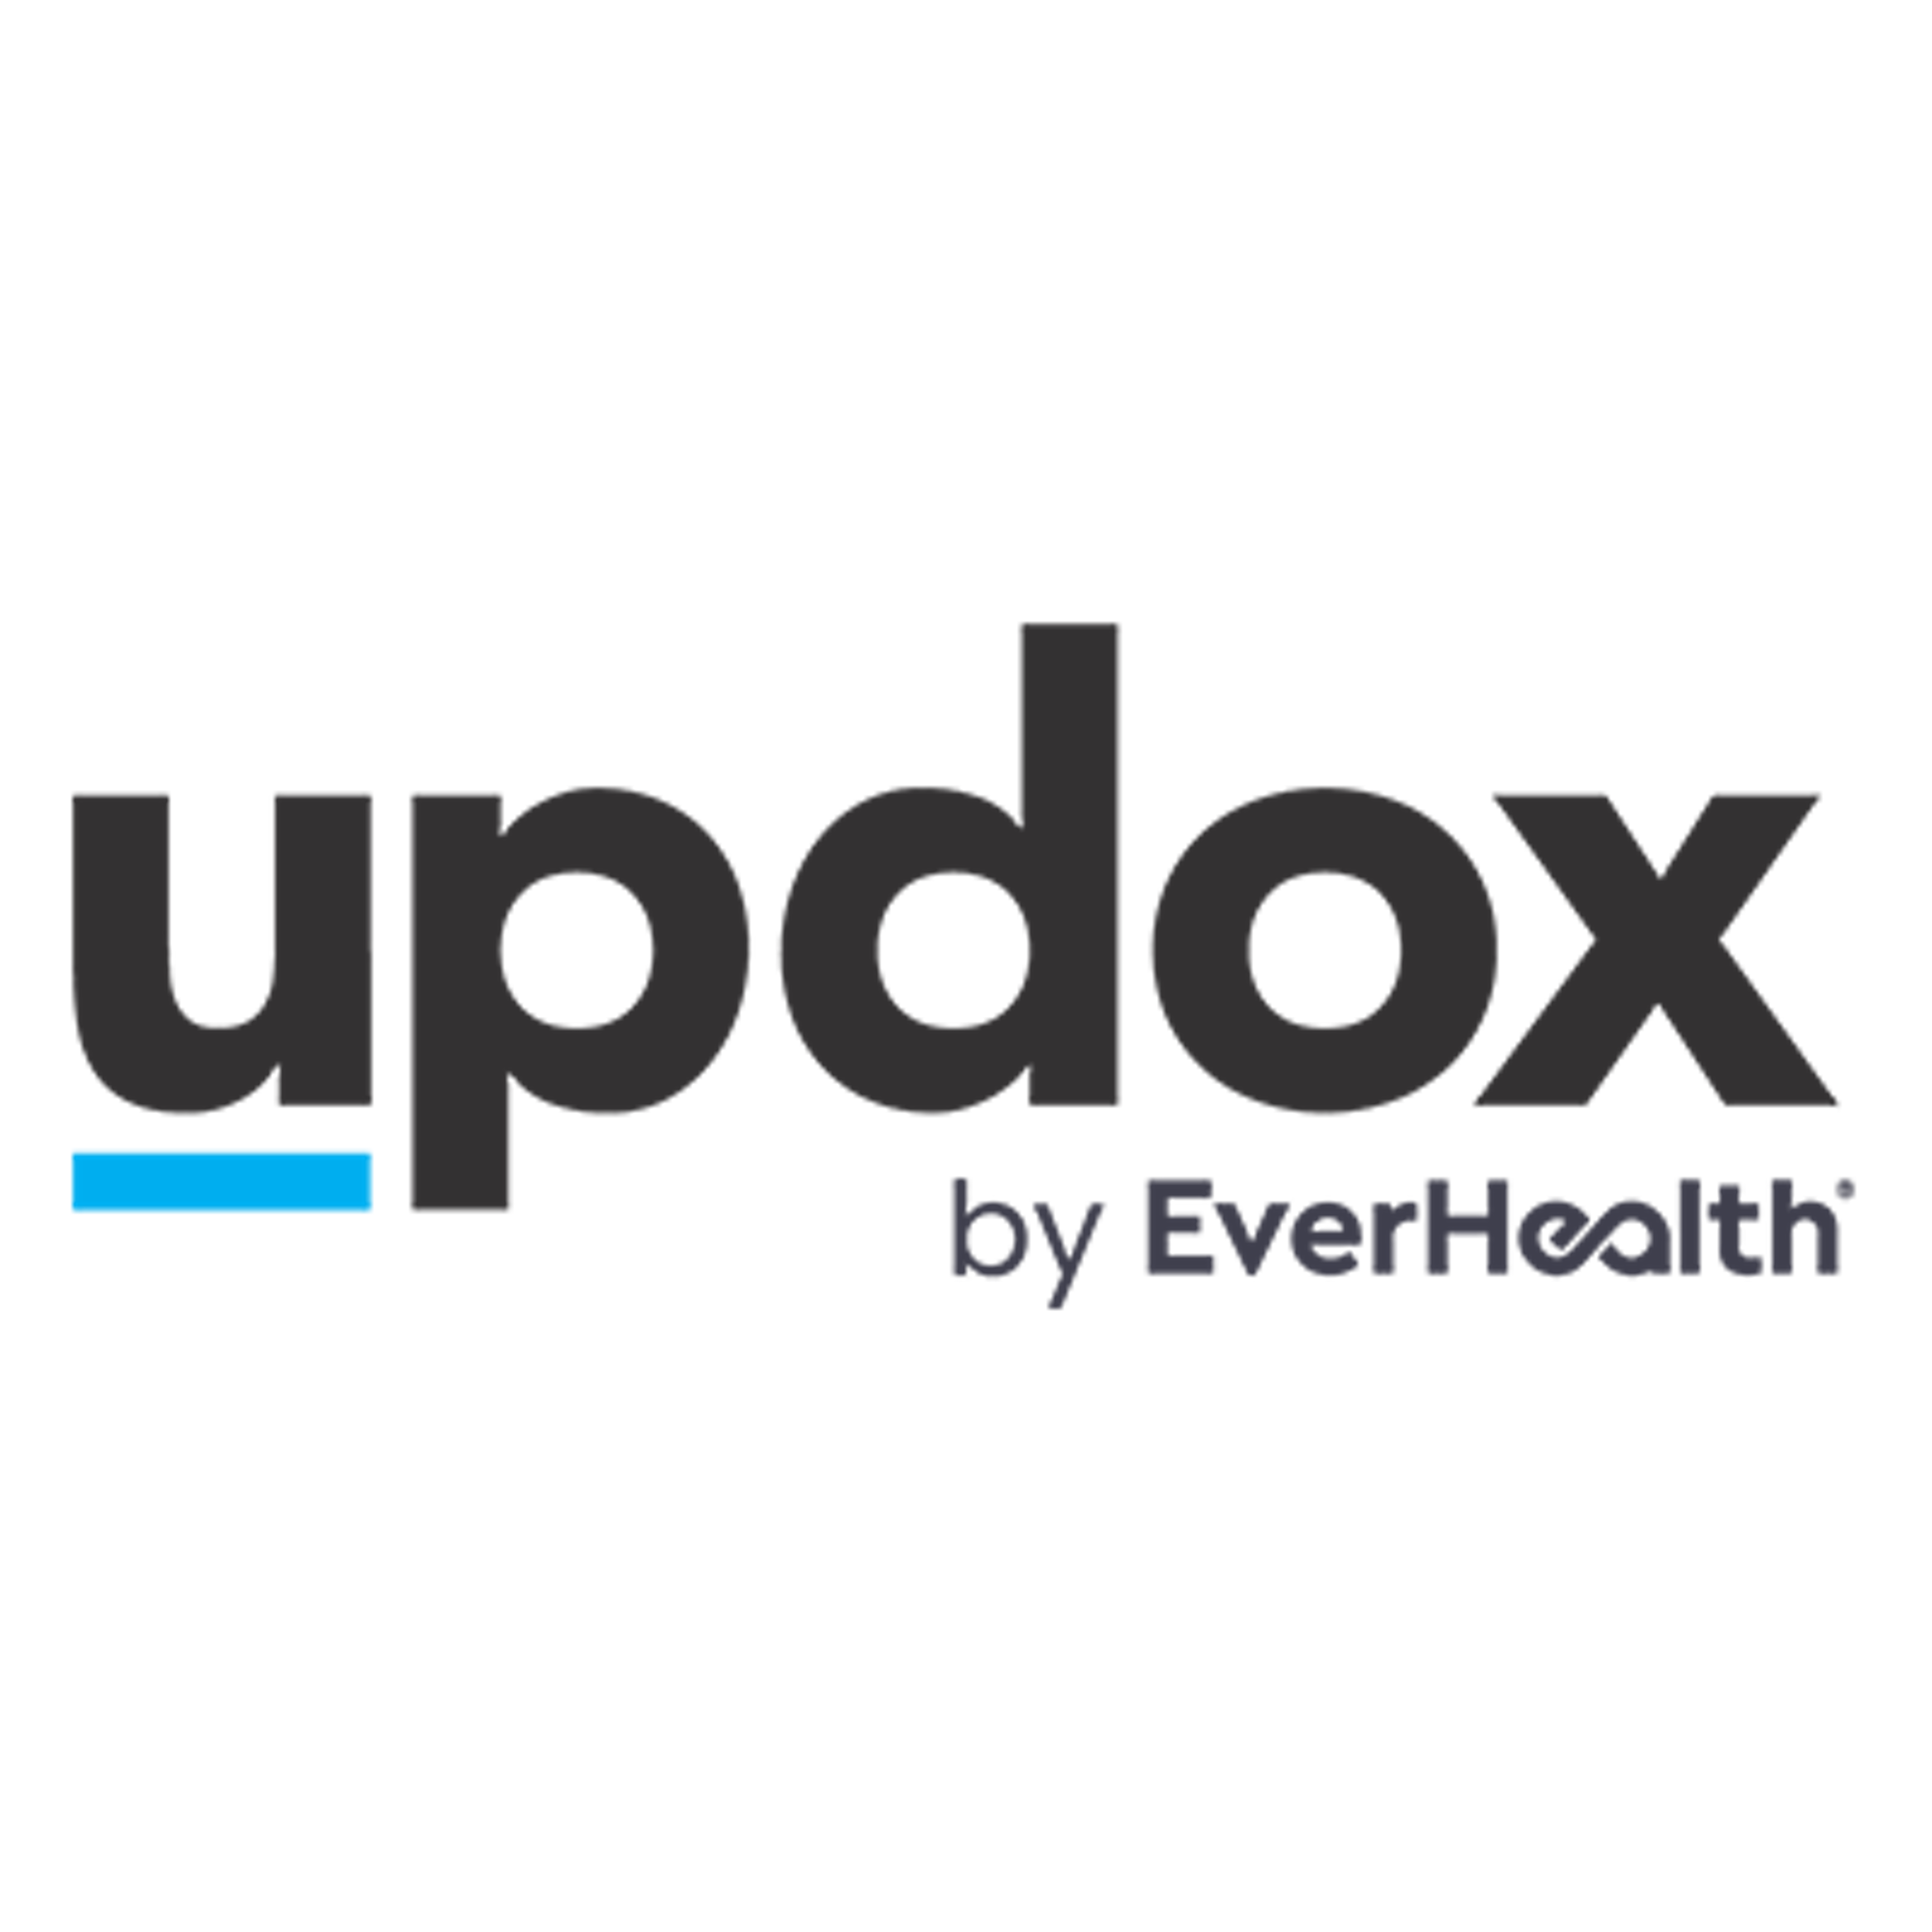 Updox Logo